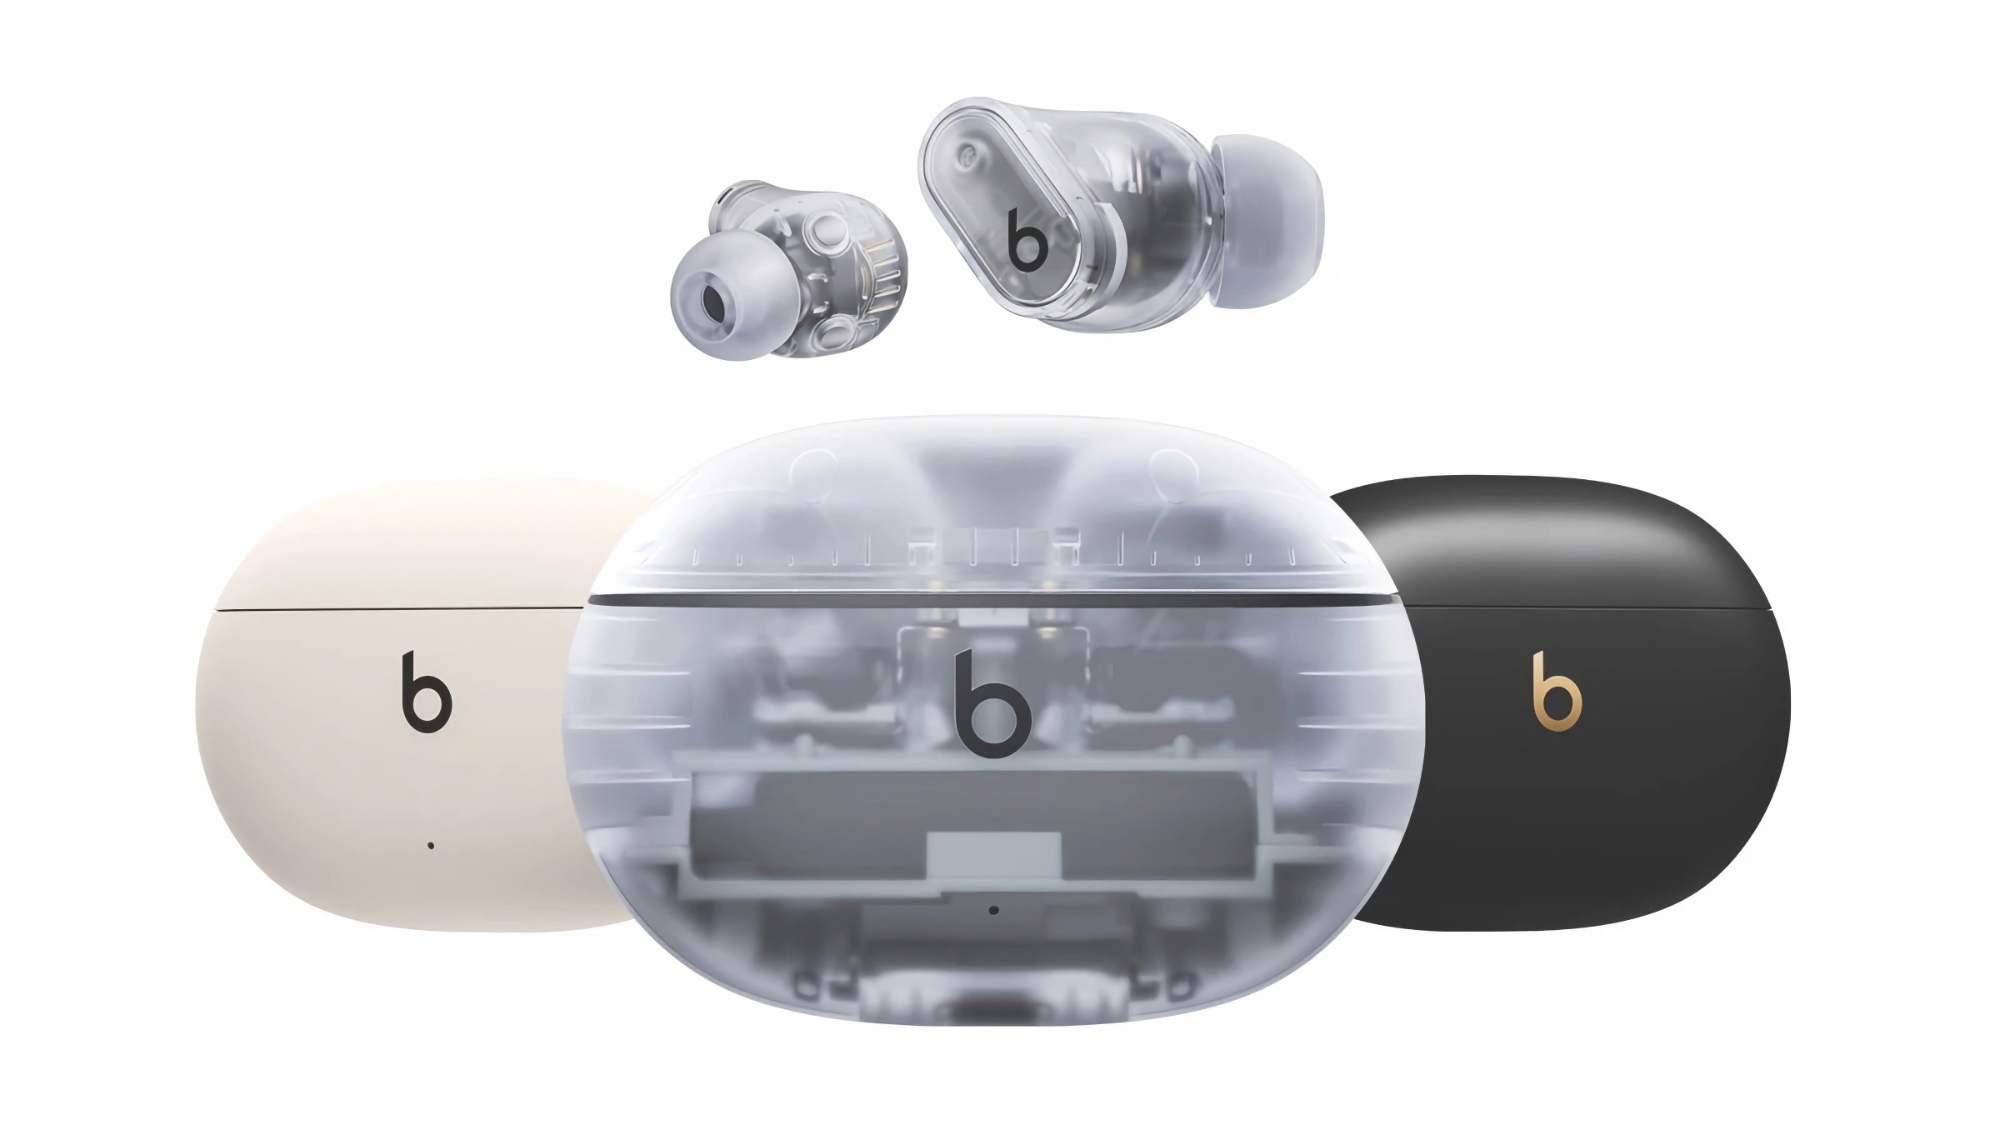 Apple stellt Beats Studio Buds+ vor: durchsichtiges Design, verbesserte Geräuschunterdrückung und bis zu 36 Stunden Akkulaufzeit für 169 US-Dollar